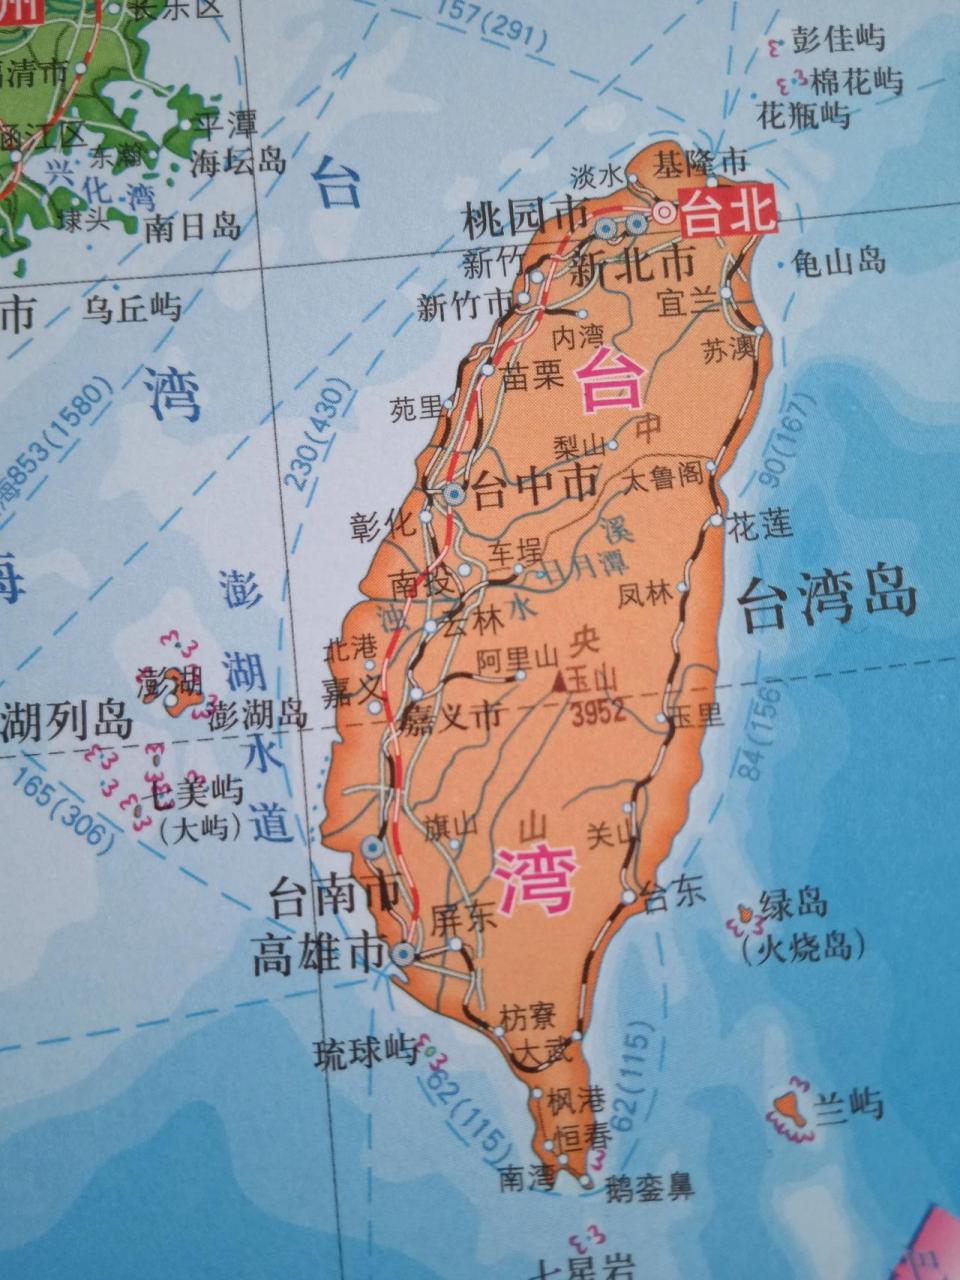 台湾岛上只有一条高铁,从台北到高雄纵贯台湾岛人口密集的西部走廊